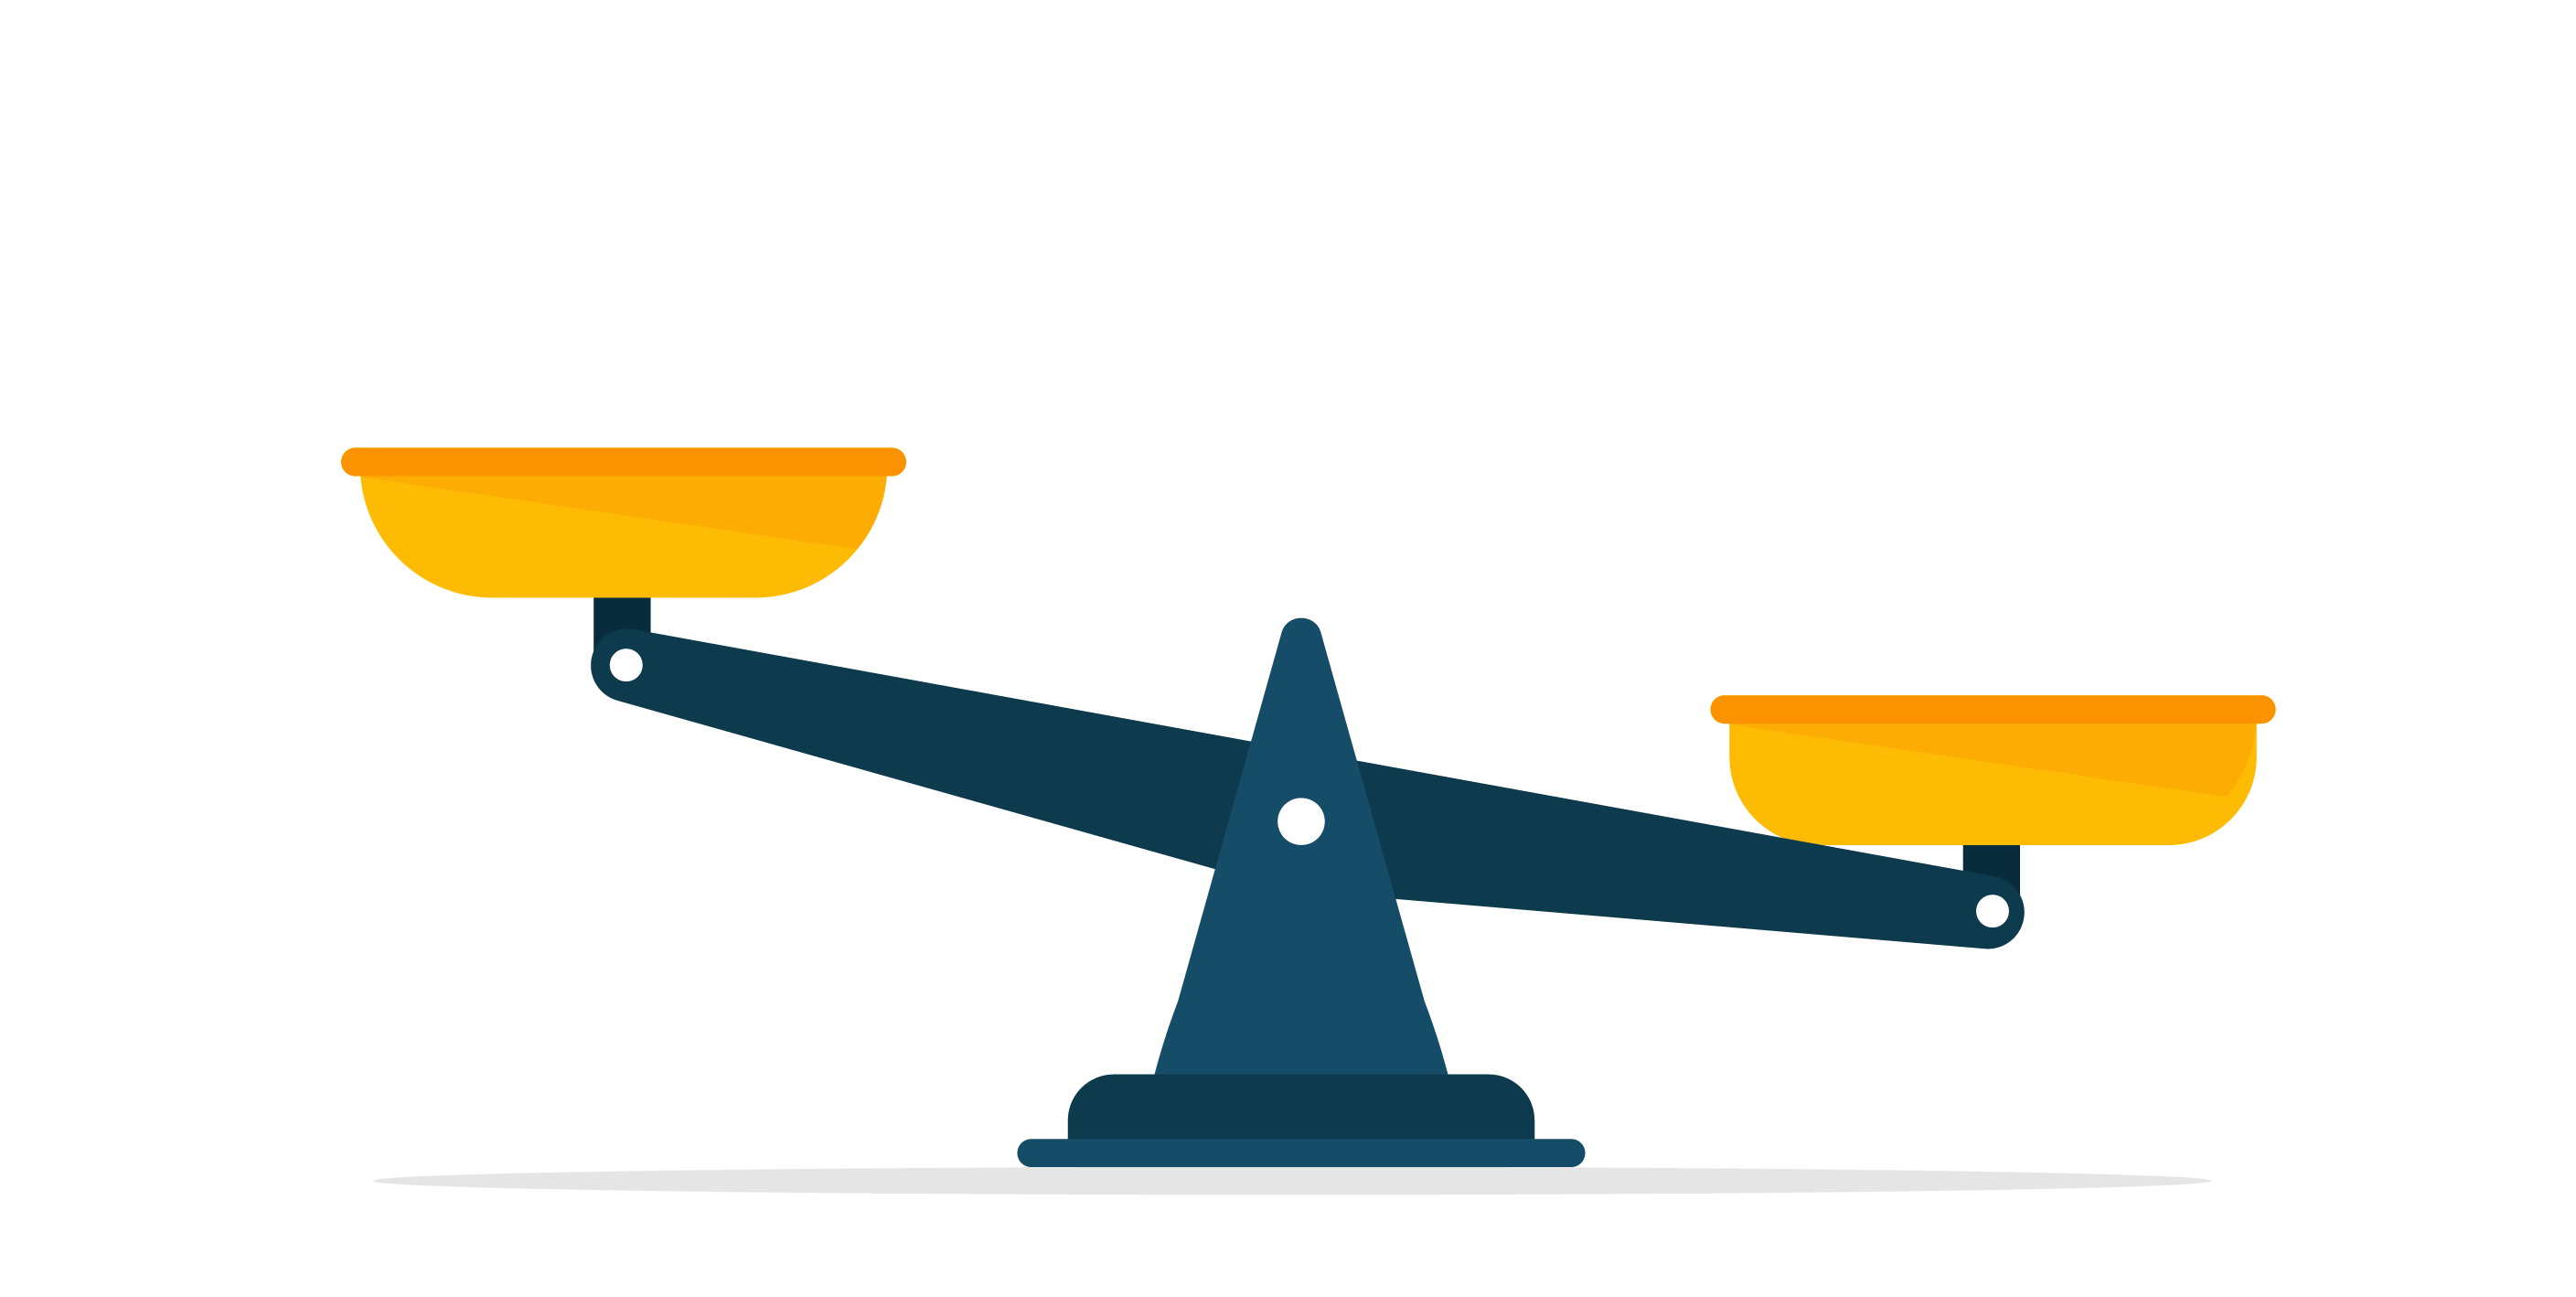 Louisiana USA, Credit Unions, Banks, Credit Union vs. Banks